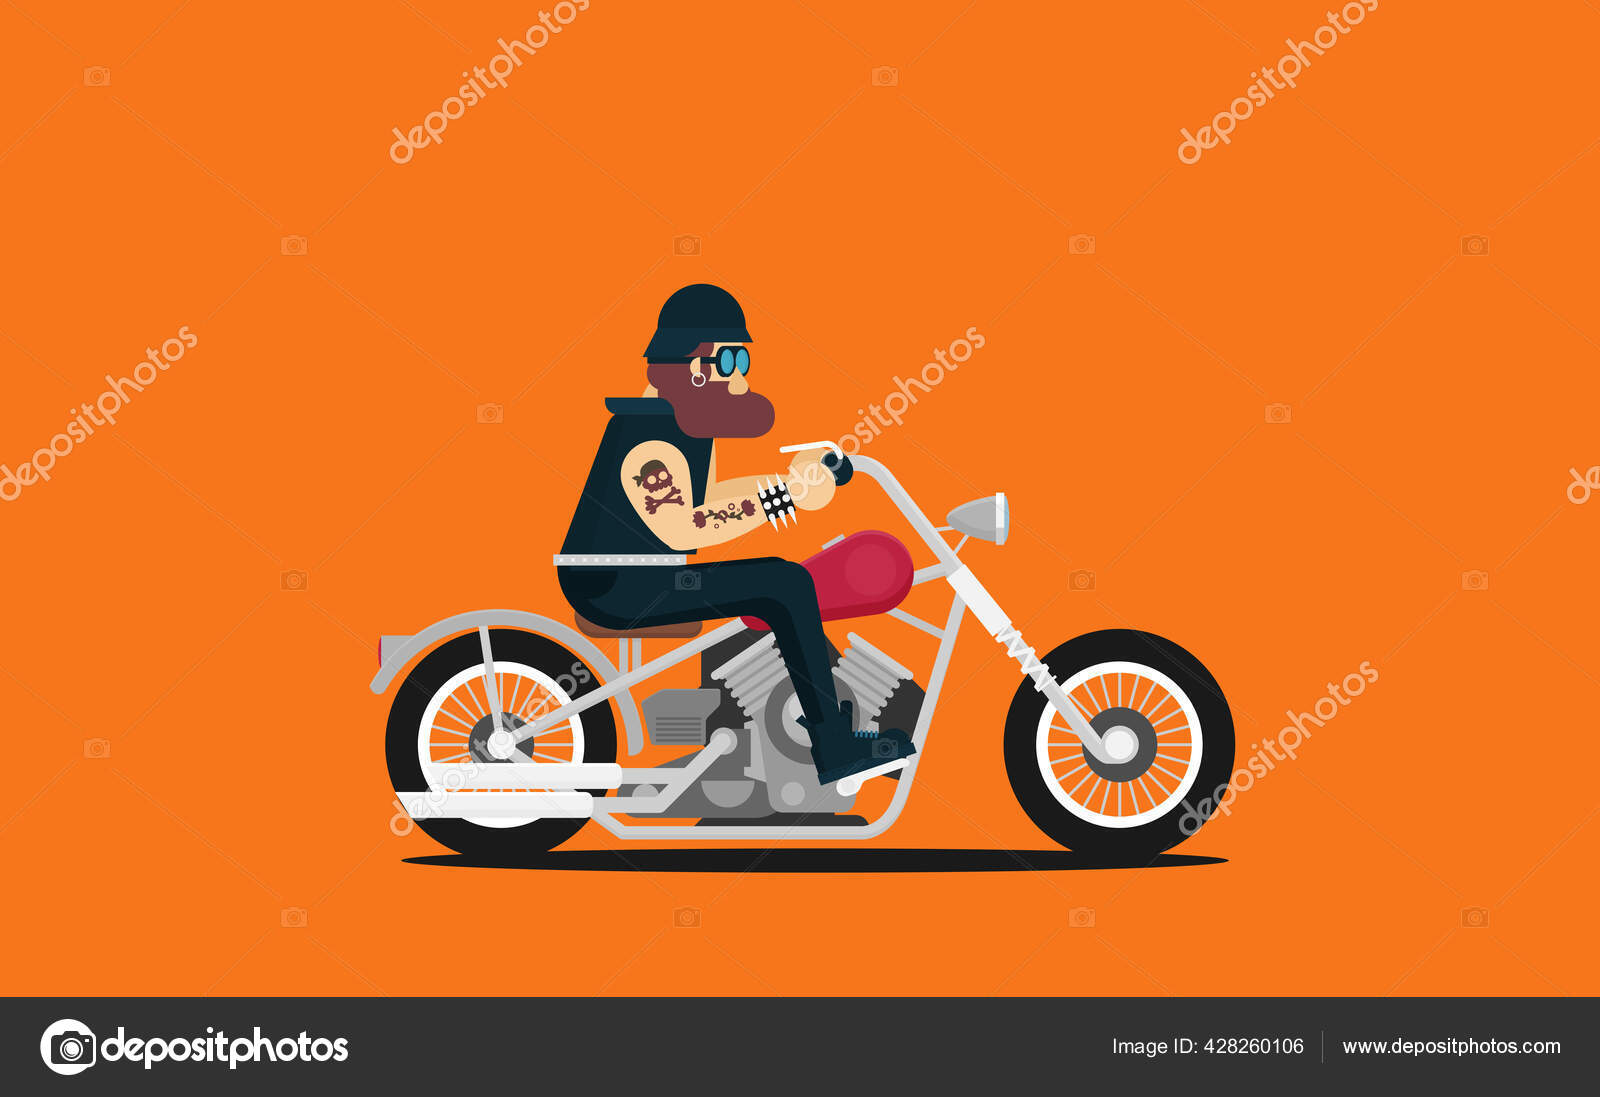 Motocicleta Clássica De Vetor Plano Com Motociclista De Desenho Animado  Brutal Royalty Free SVG, Cliparts, Vetores, e Ilustrações Stock. Image  128070413